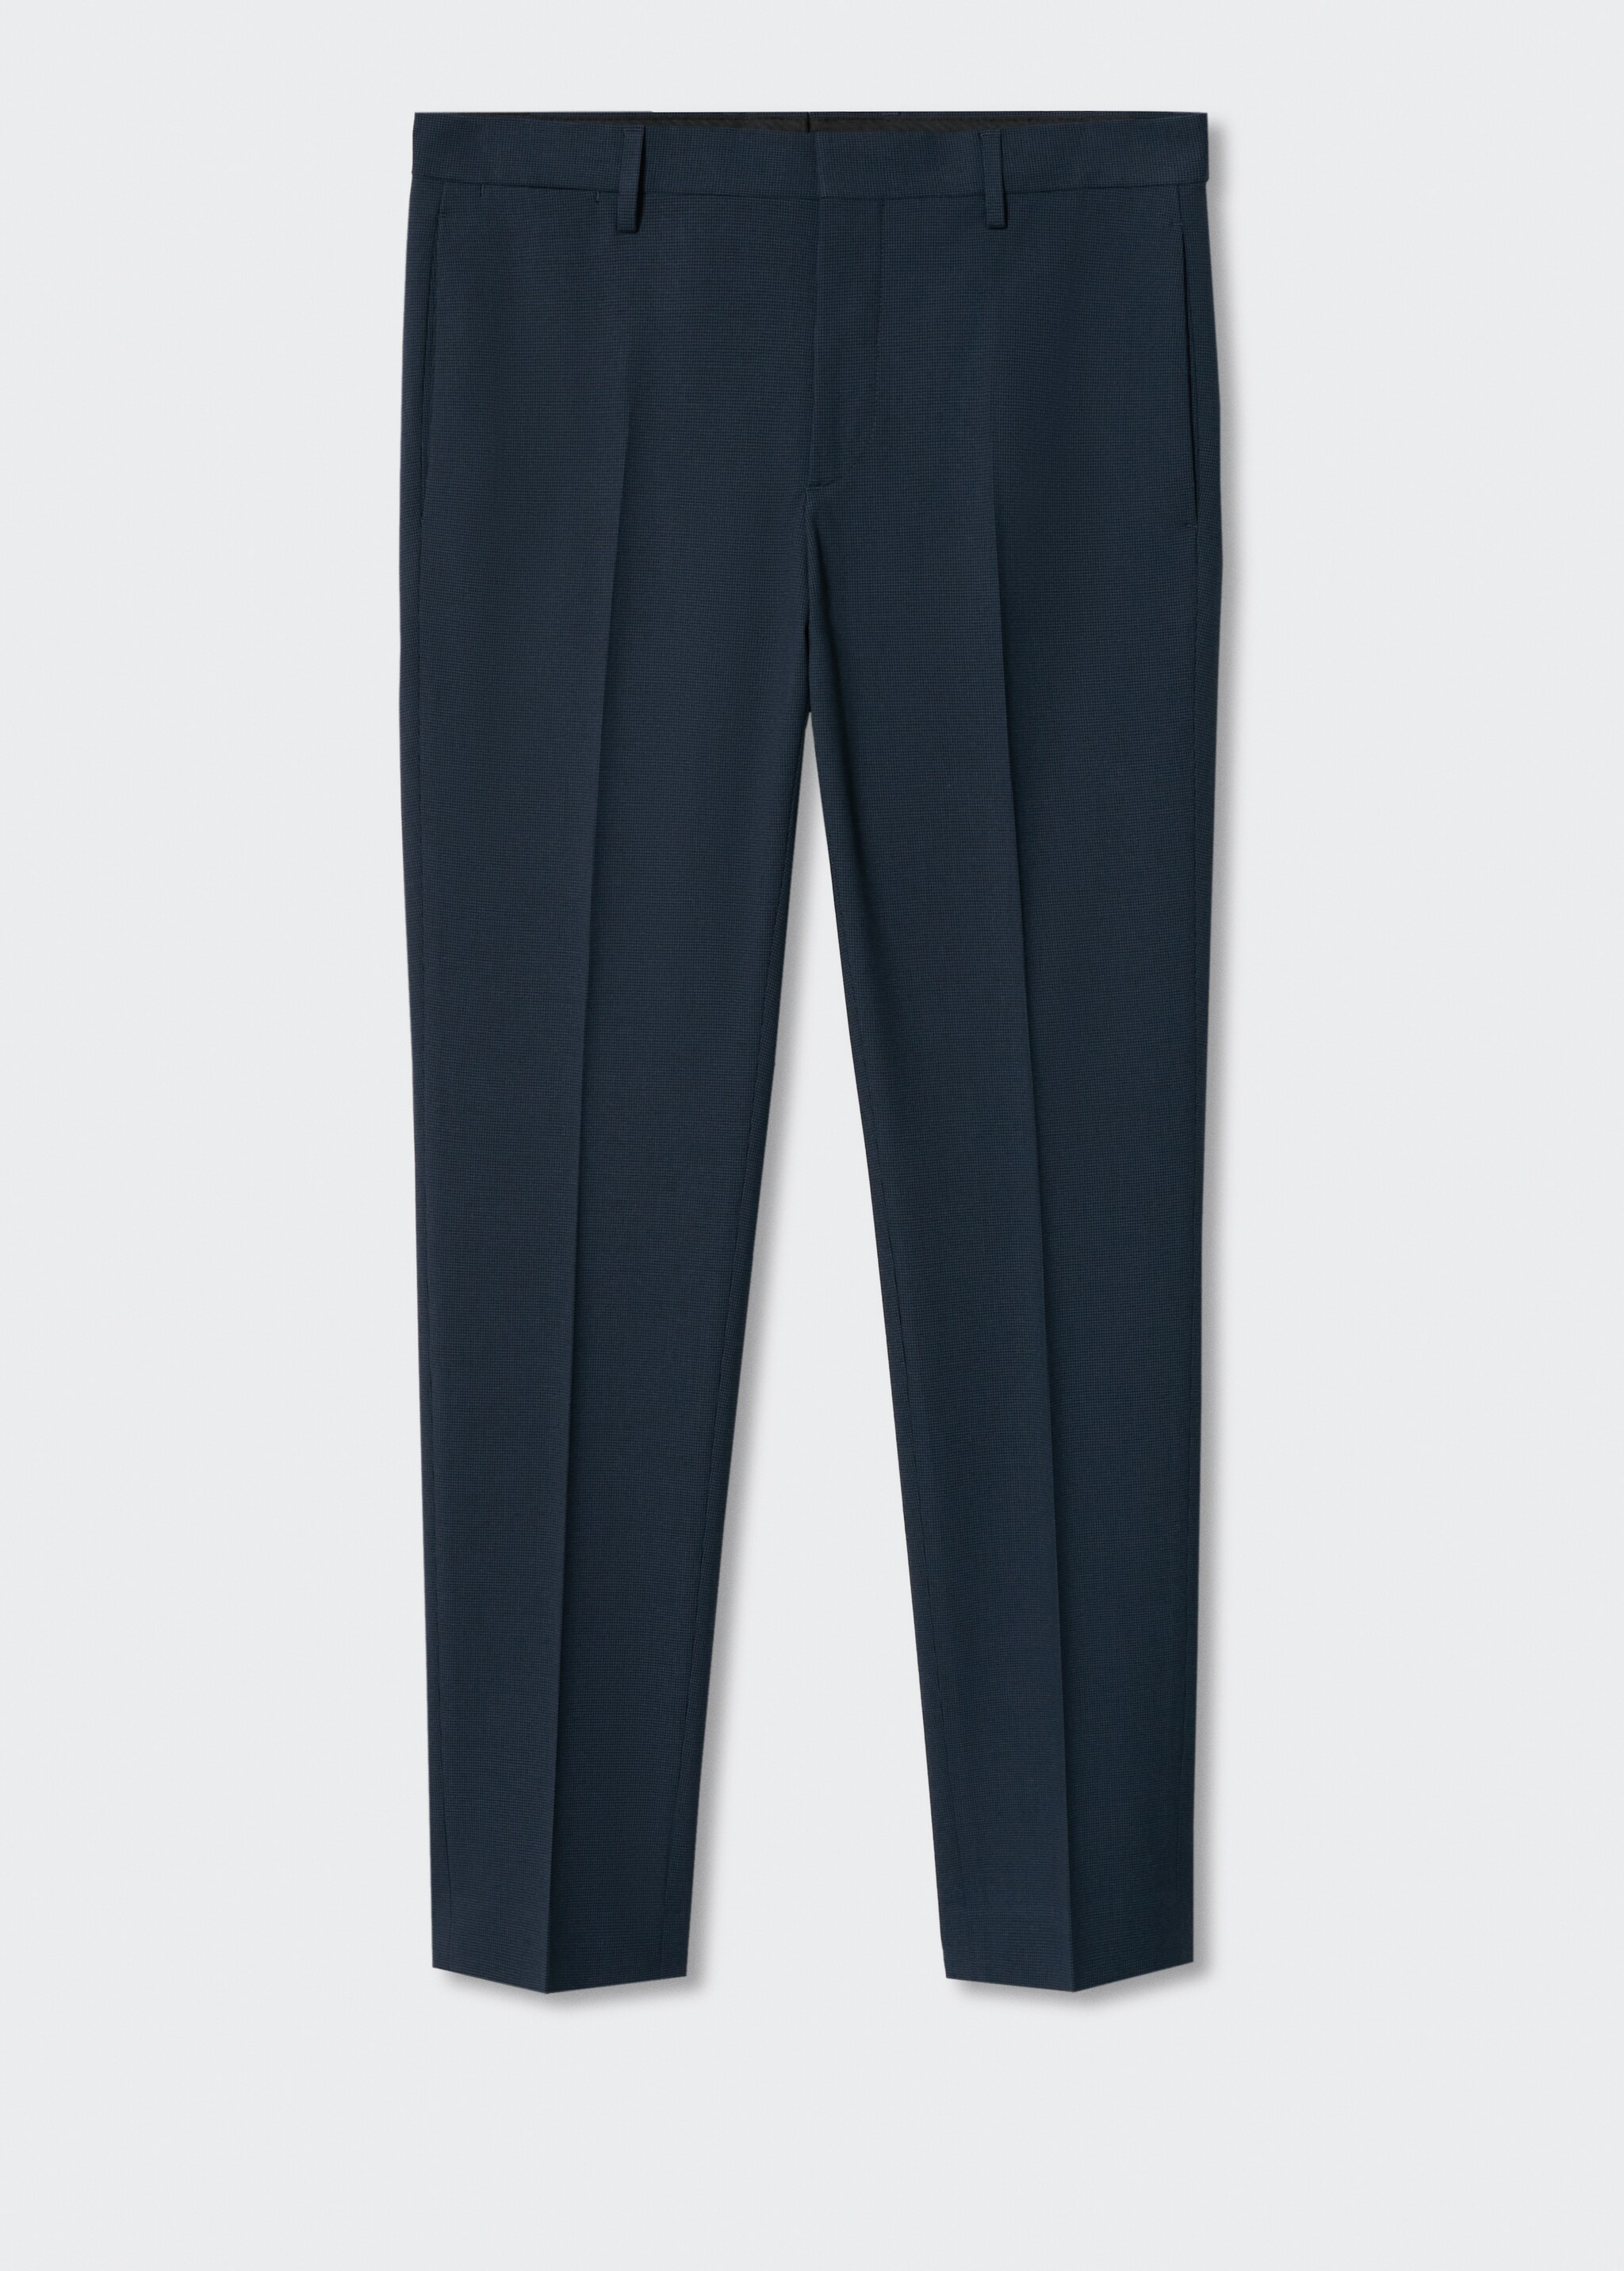 Pantalón traje super slim fit microestructura - Artículo sin modelo